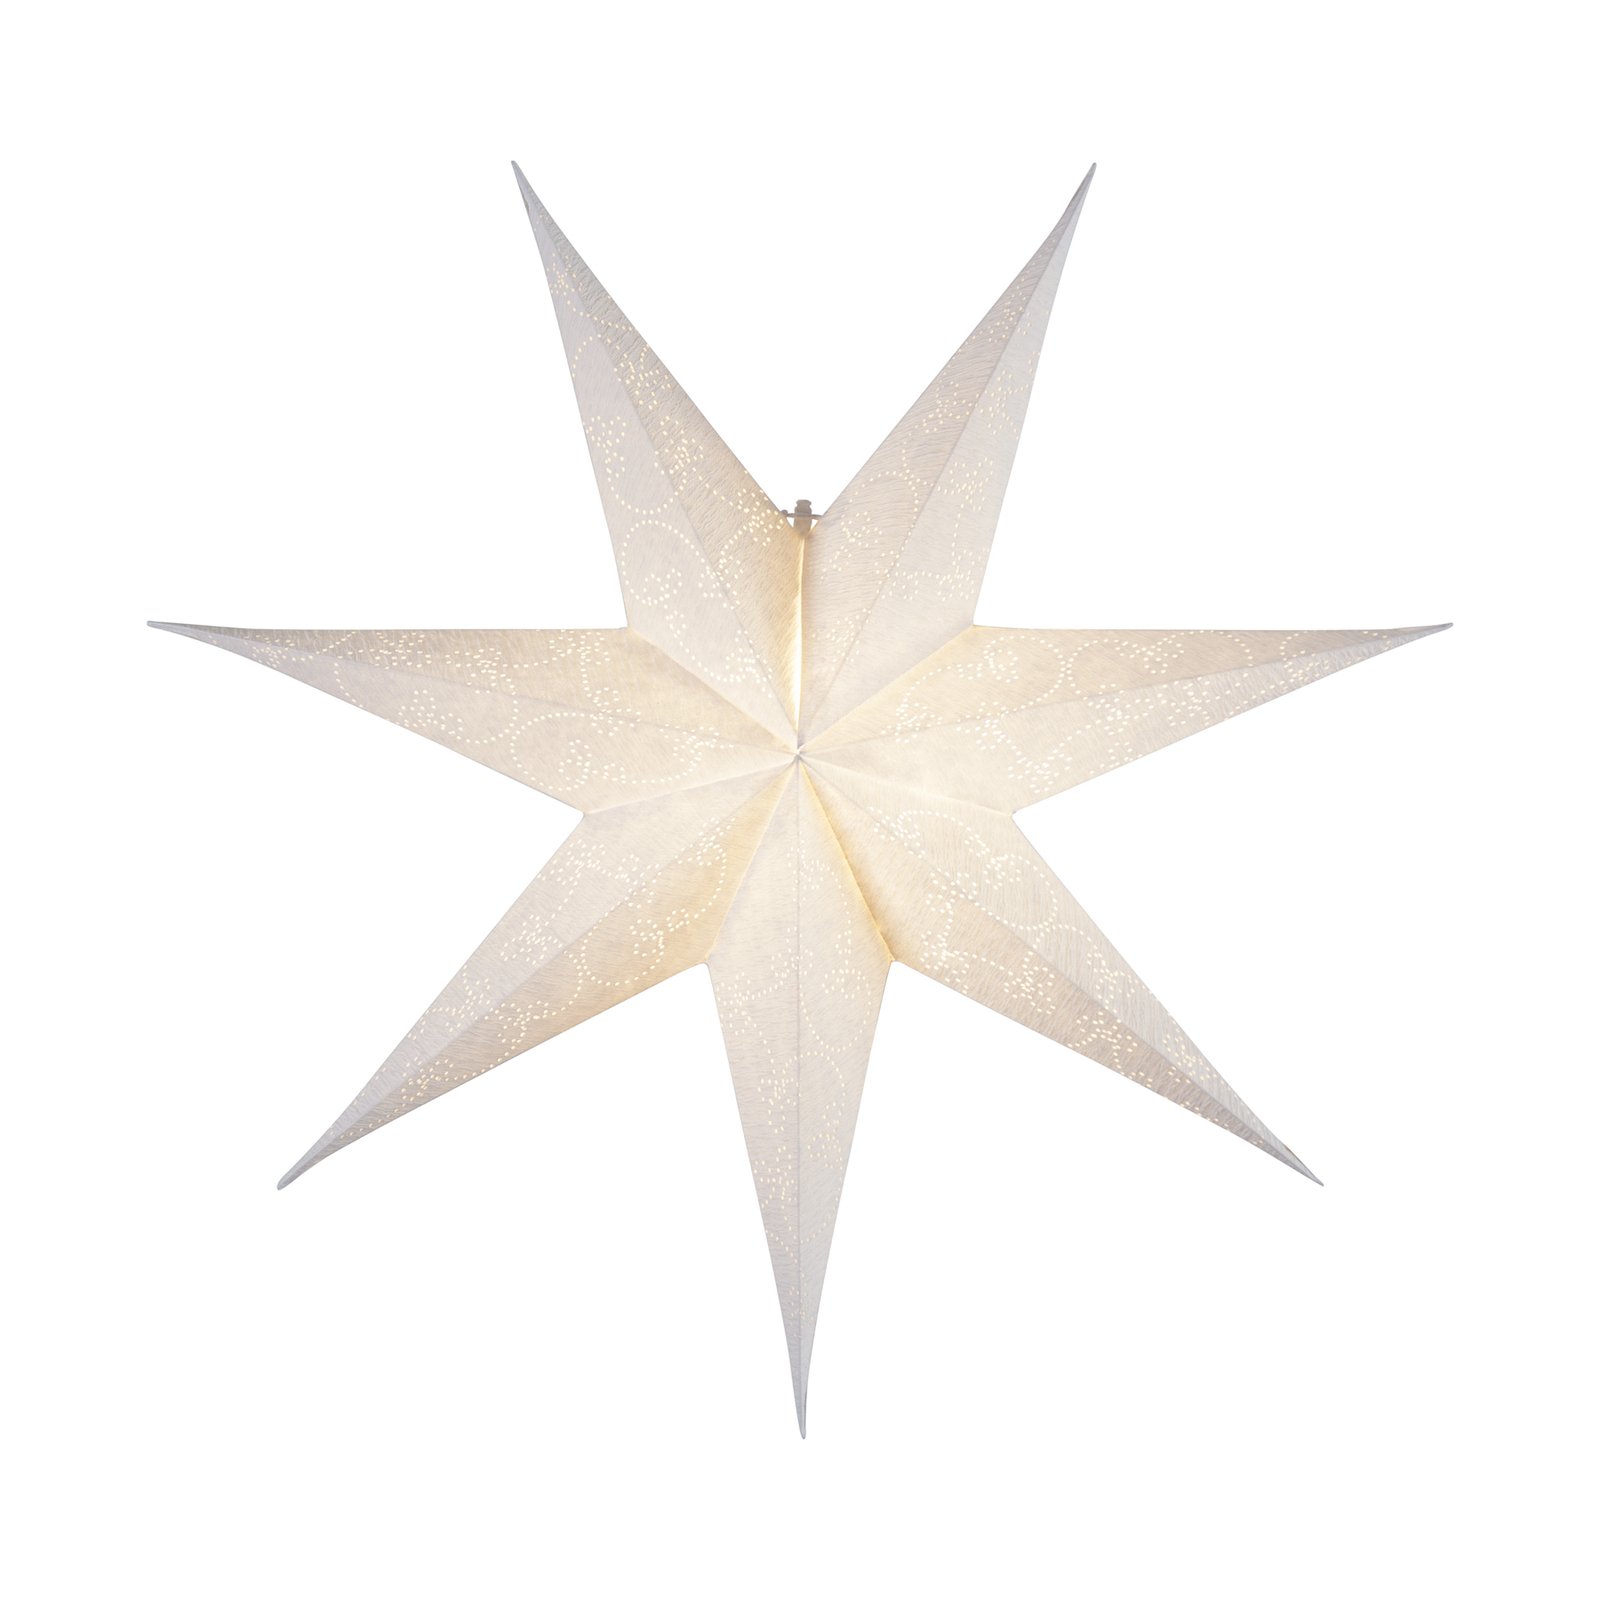 Papírová hvězda Decorus bez osvětlení bílá/stříbro